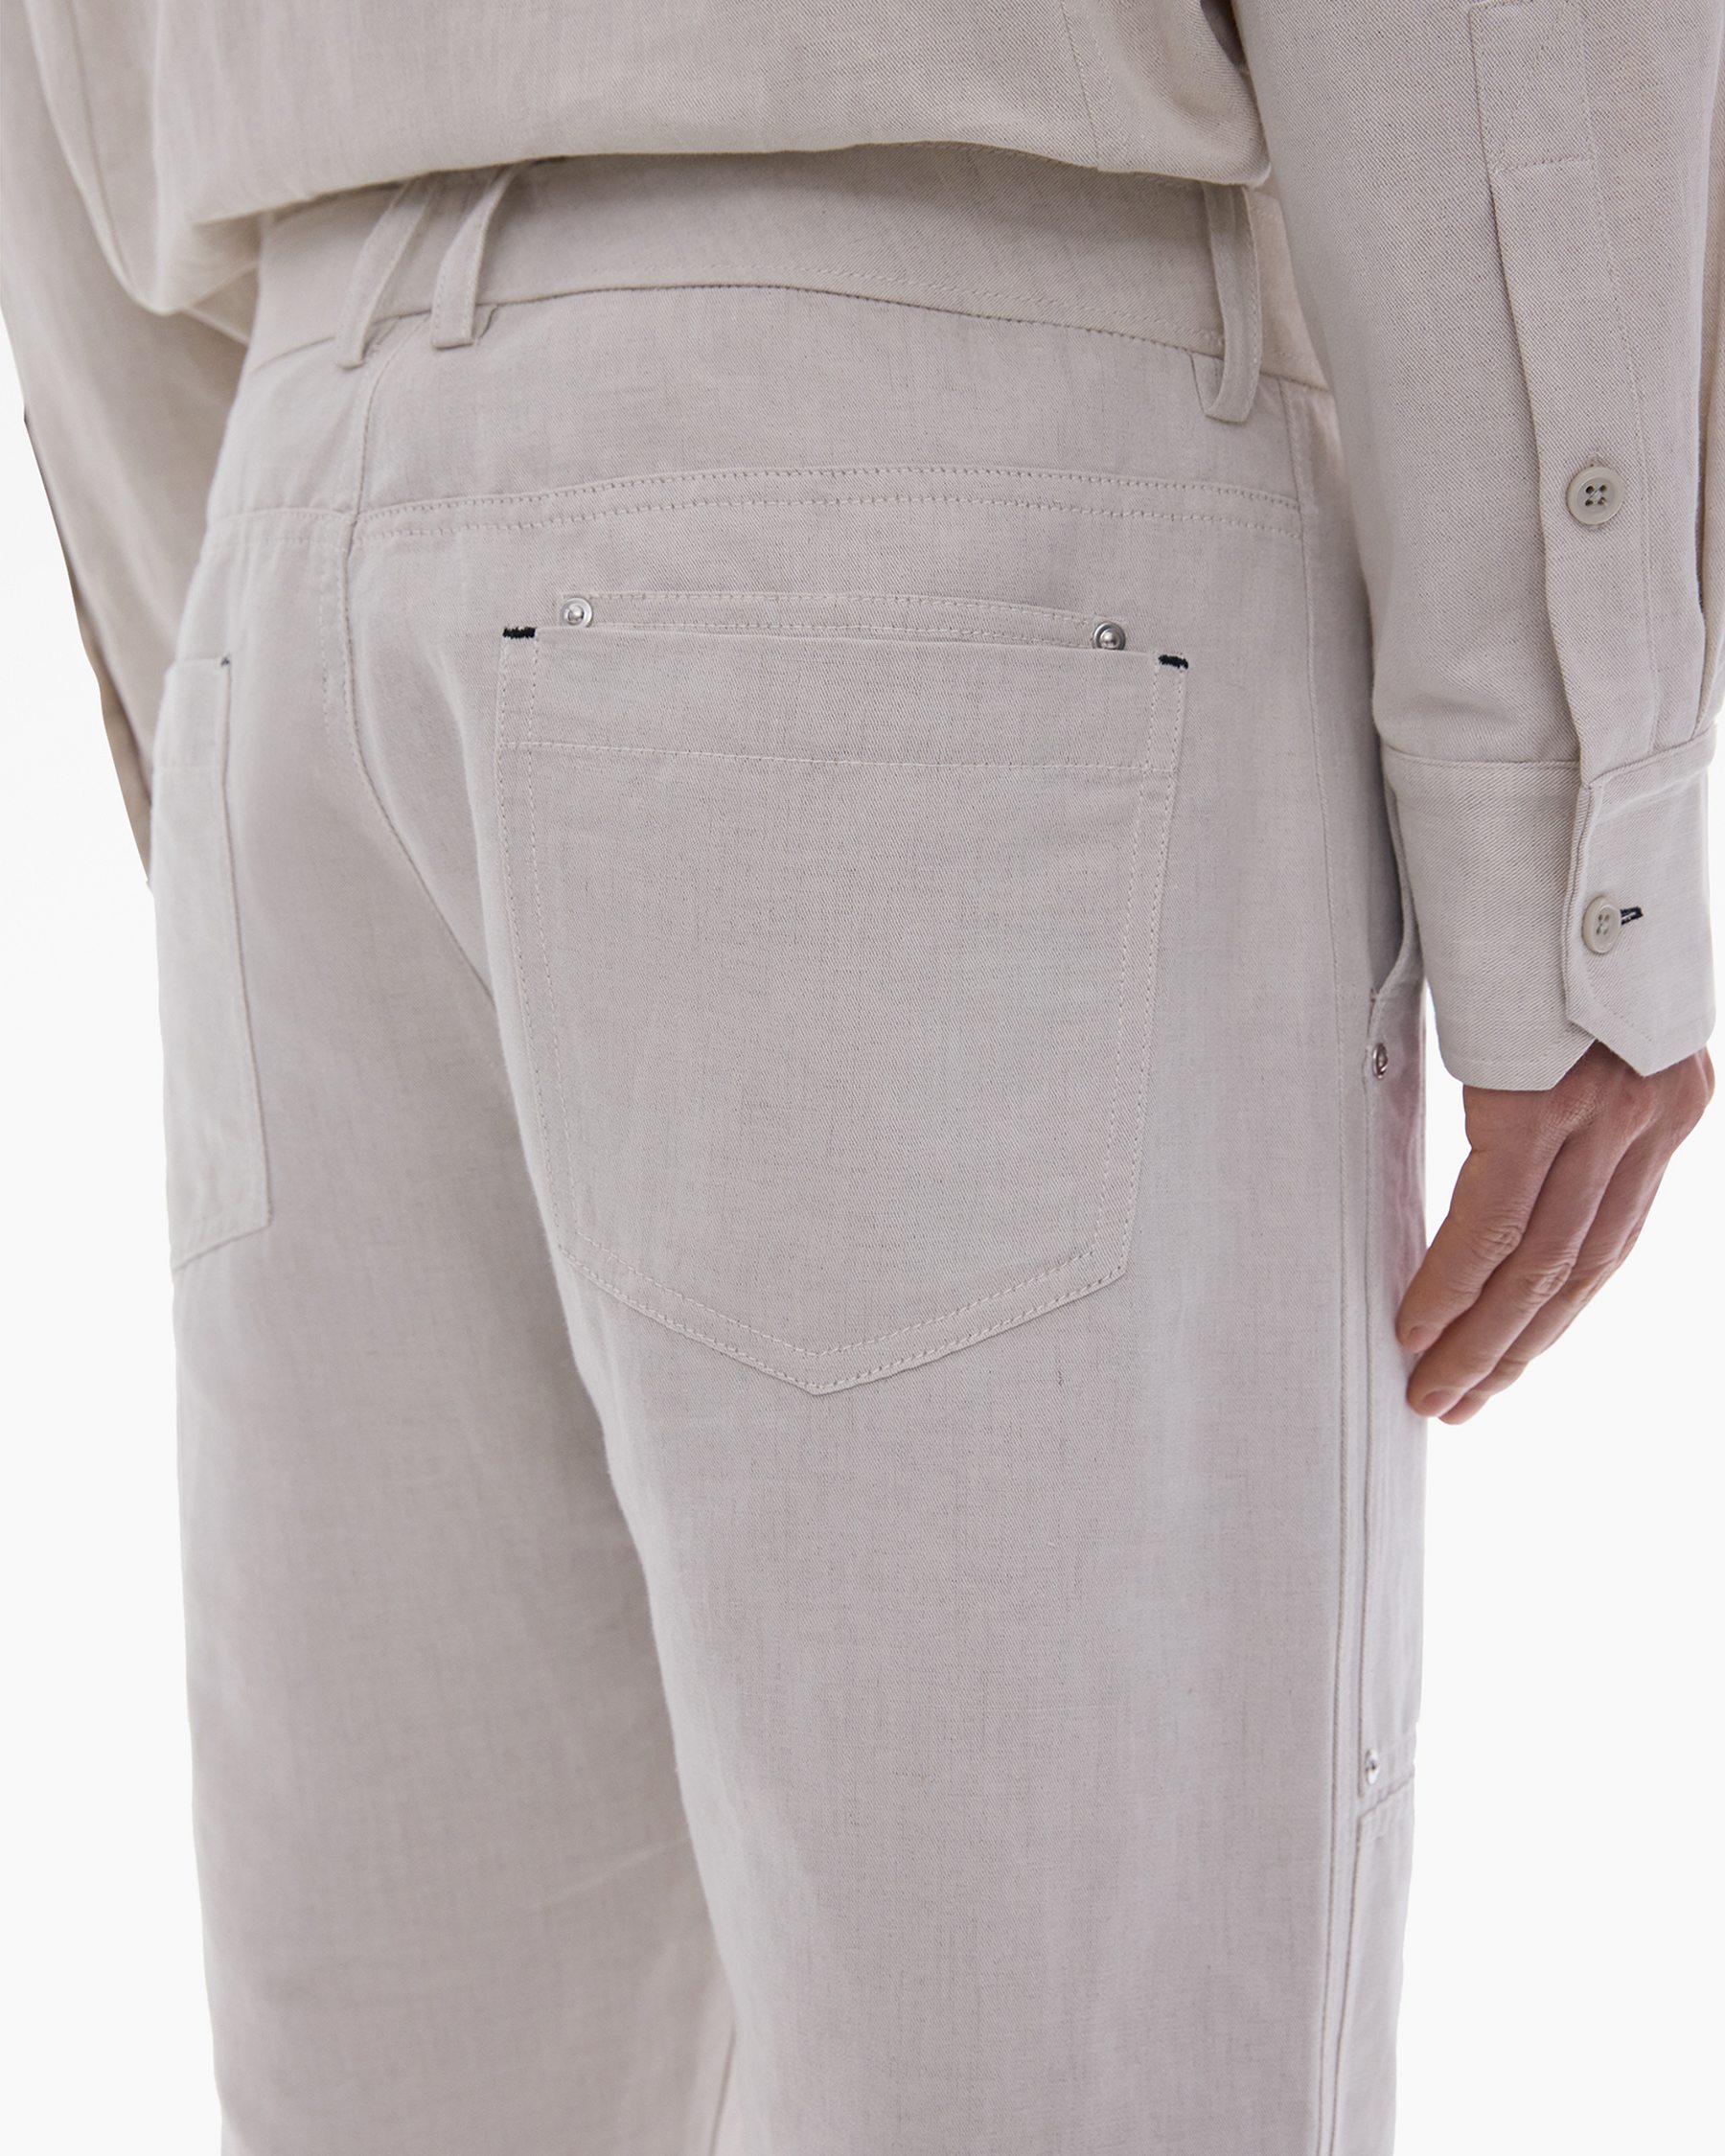 Cotton-Linen Carpenter Pant